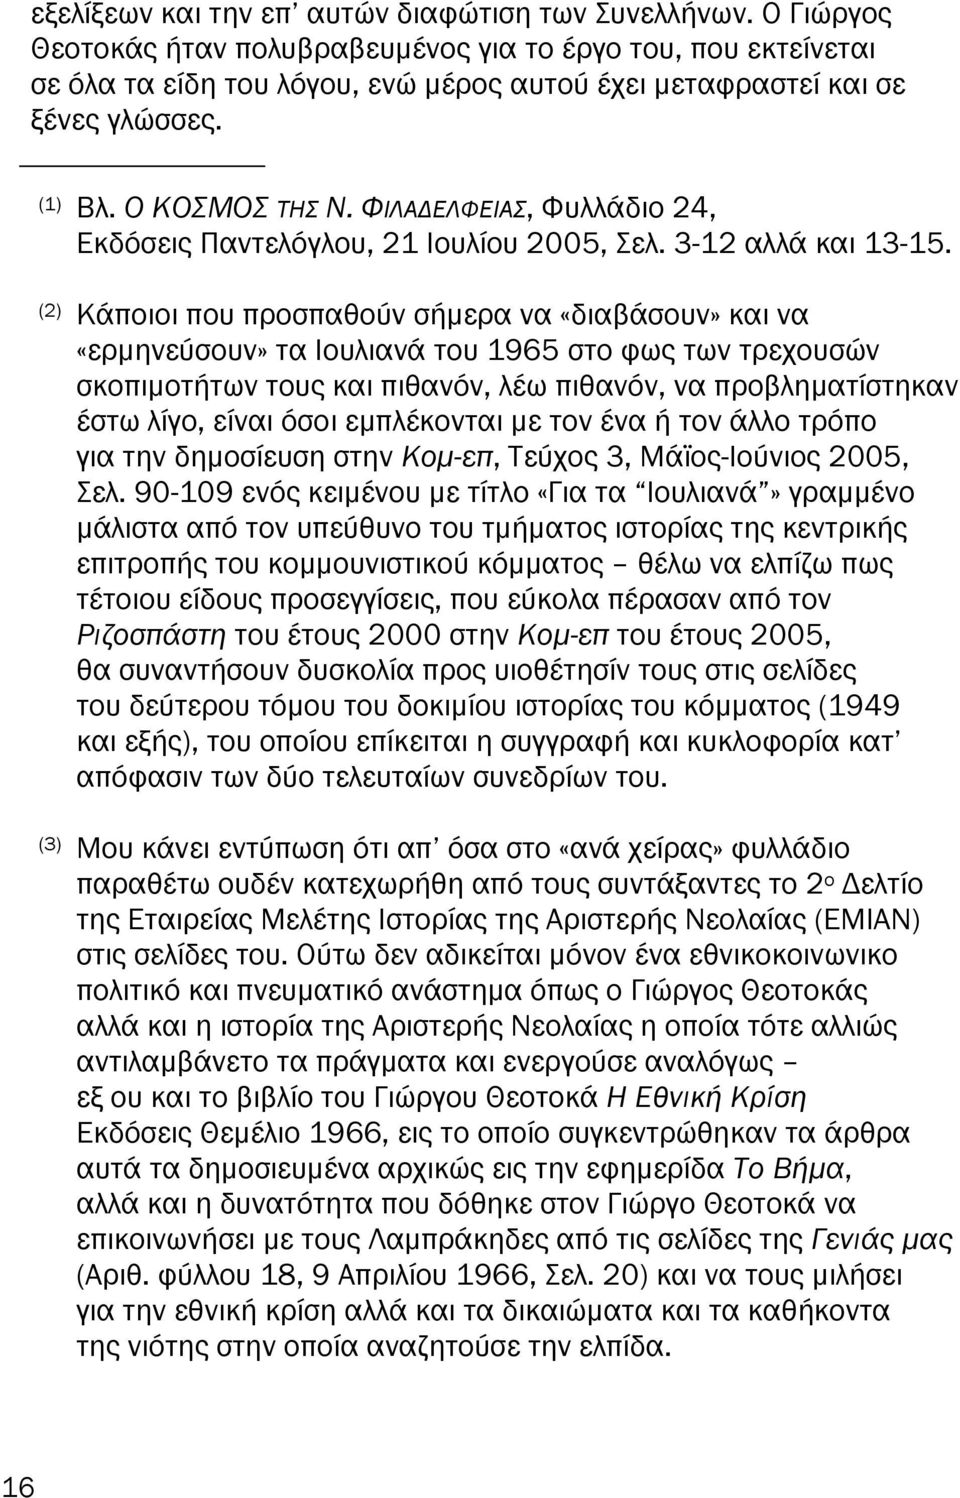 ΦΙΛΑ ΕΛΦΕΙΑΣ, Φυλλάδιο 24, Εκδόσεις Παντελόγλου, 21 Ιουλίου 2005, Σελ. 3-12 αλλά και 13-15.